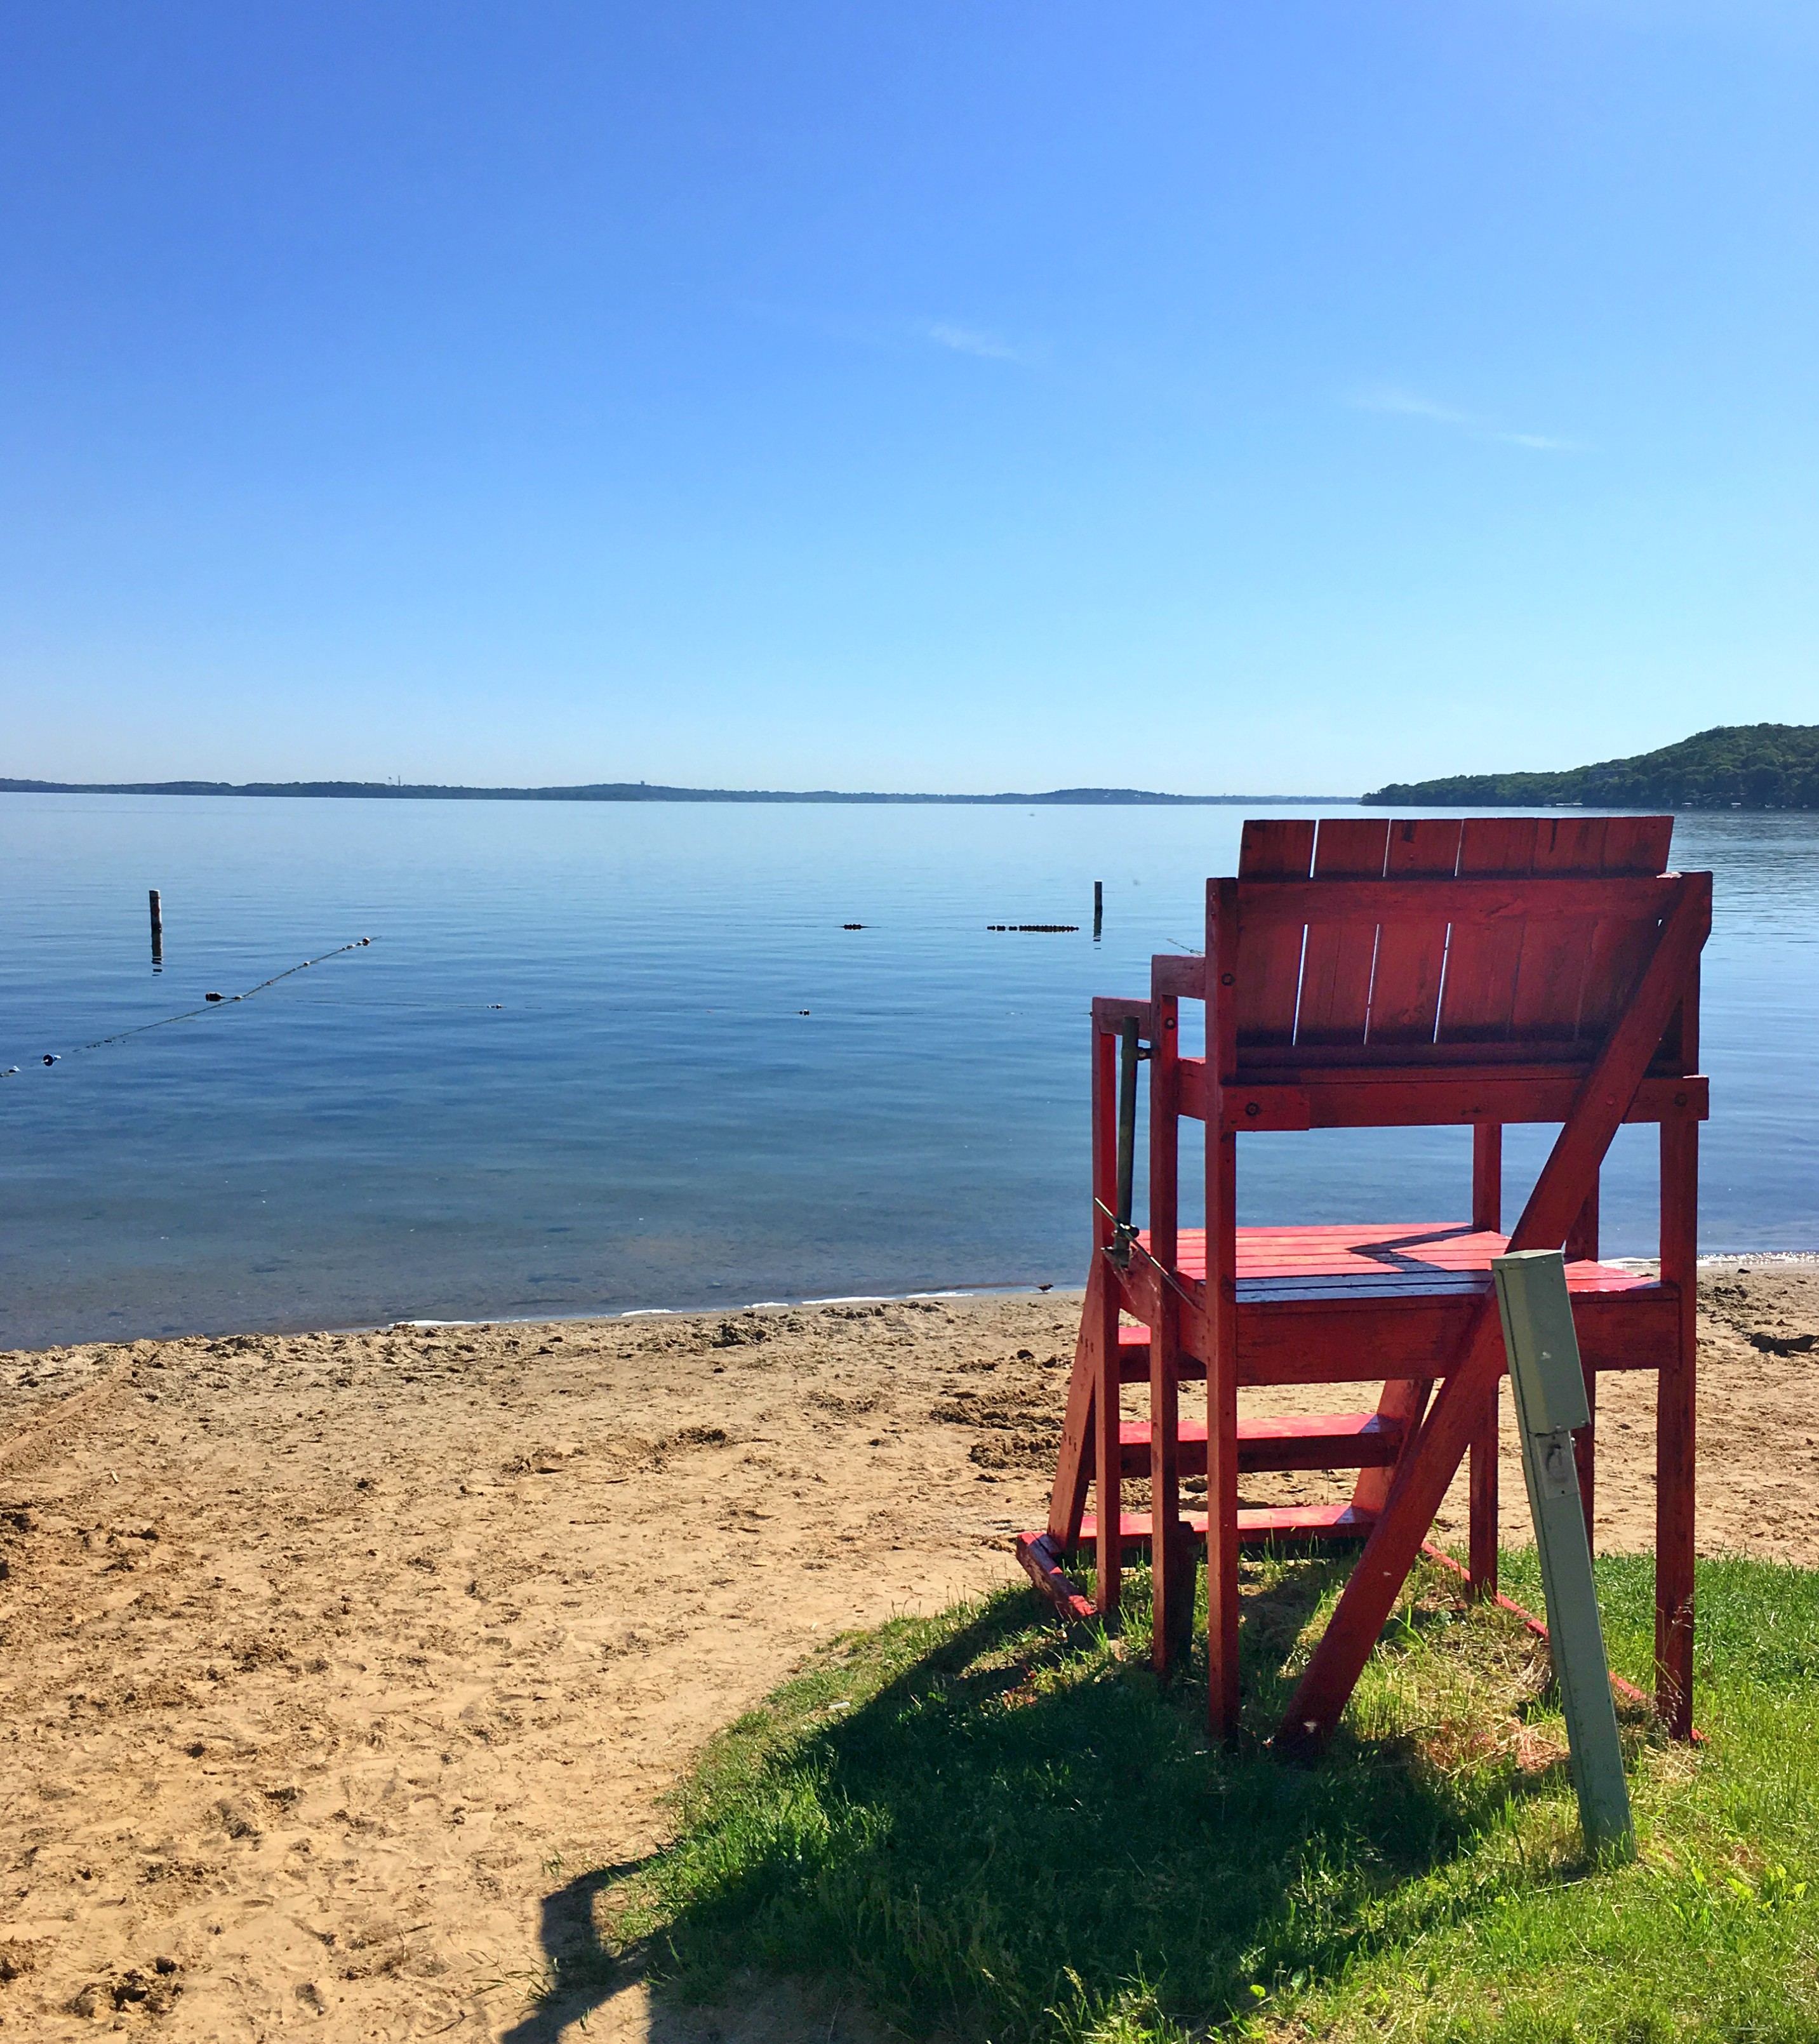 Lifeguard chair overlooking a sandy beach.